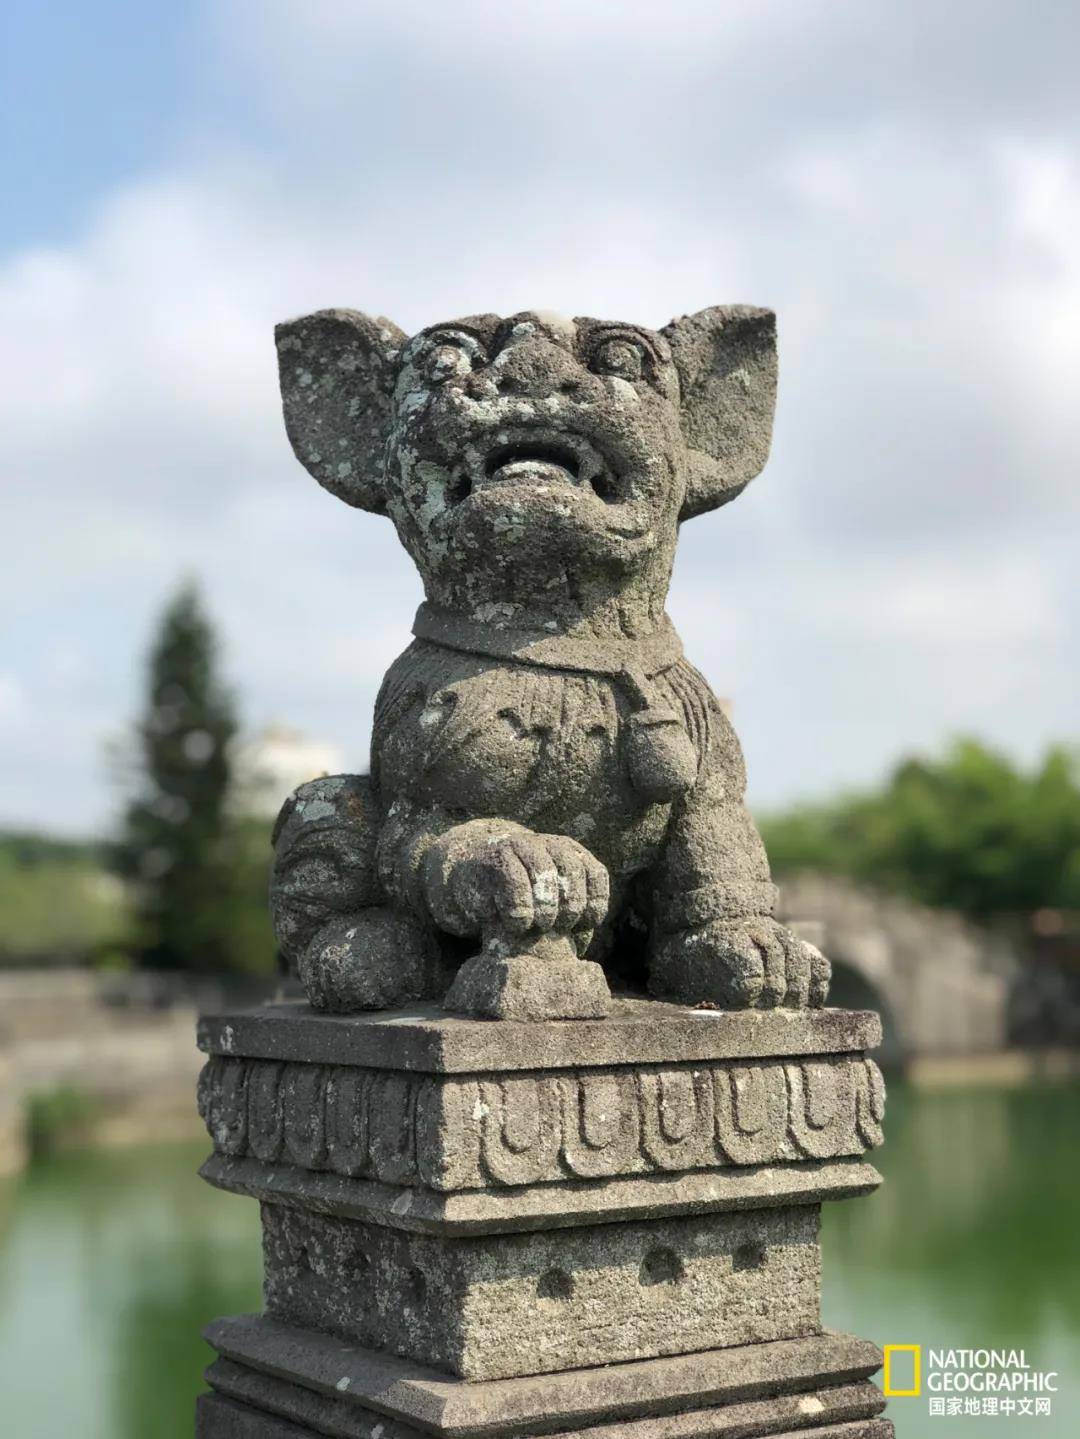 中国各地的石雕中常见石狮,石马,石人等,但雷州常见的却是石狗中国